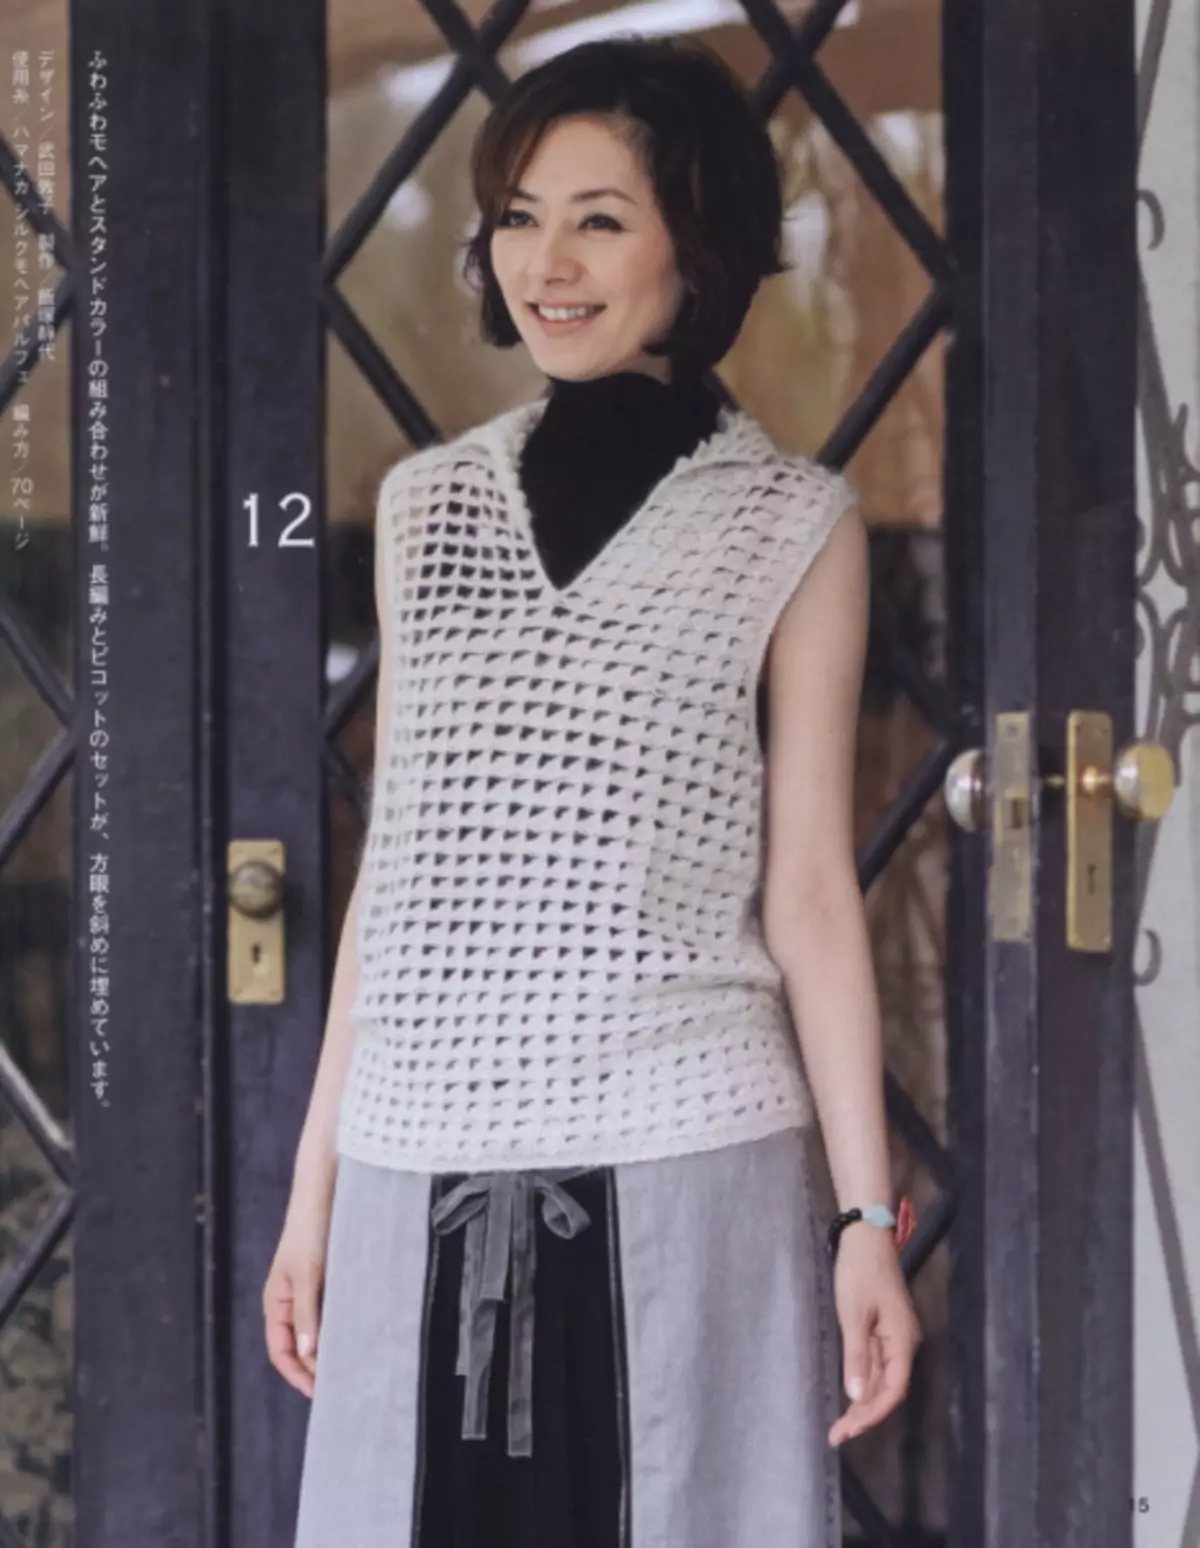 Японскі часопіс «Lets knit series 80561». Восень-зіма 2019